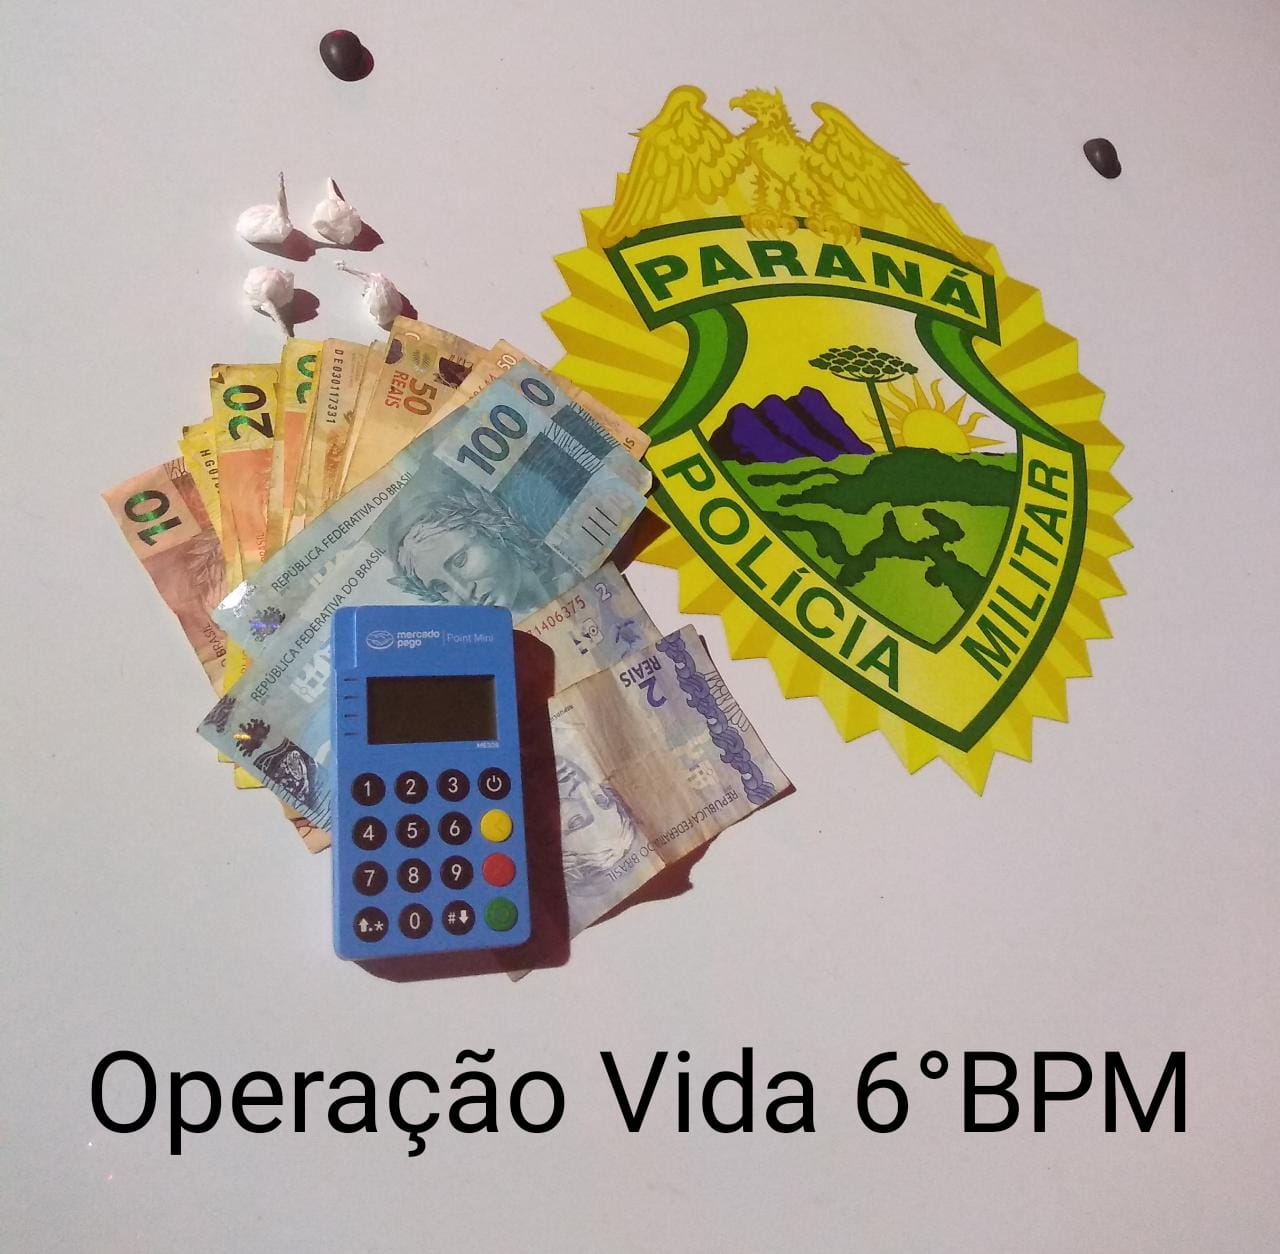 Imagem referente a Operação Vida: Durante abordagem no Santa Cruz, PM localiza cocaína, dinheiro e até máquina de cartão